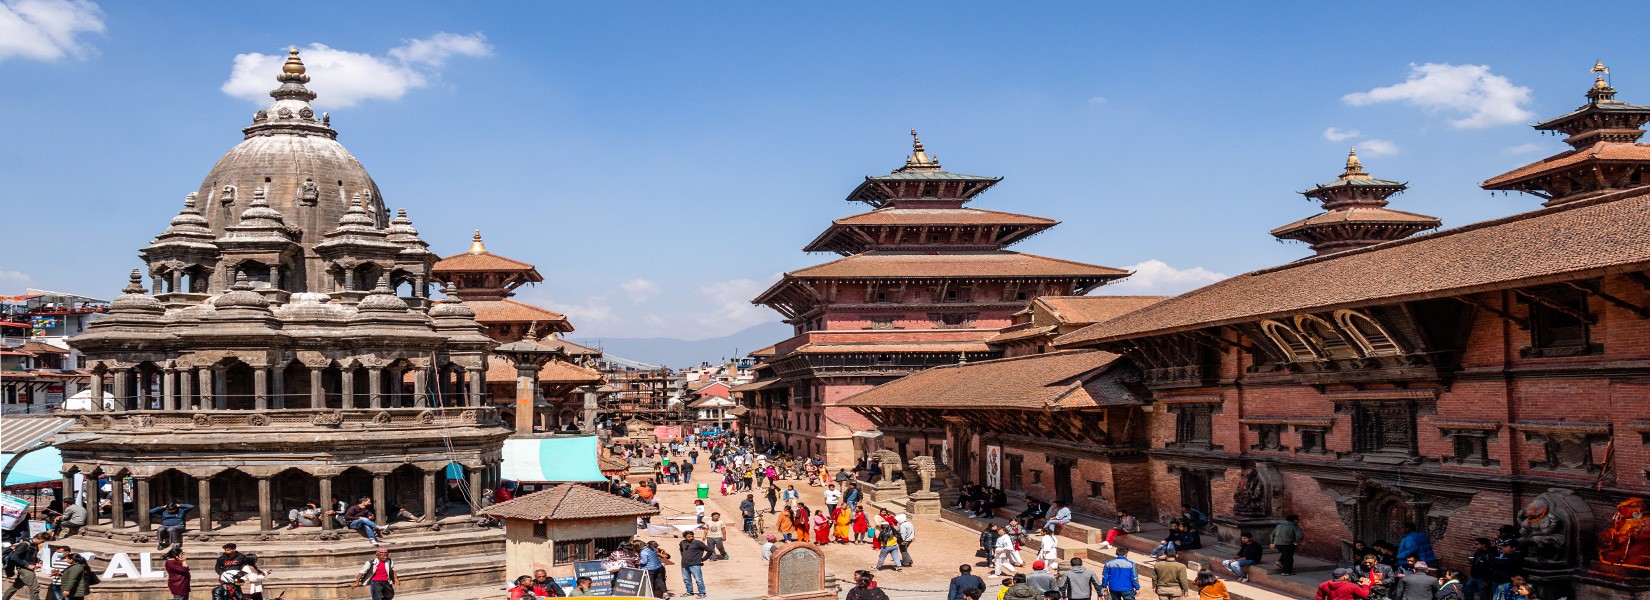 Patan-Lalitpur Heritage Tour